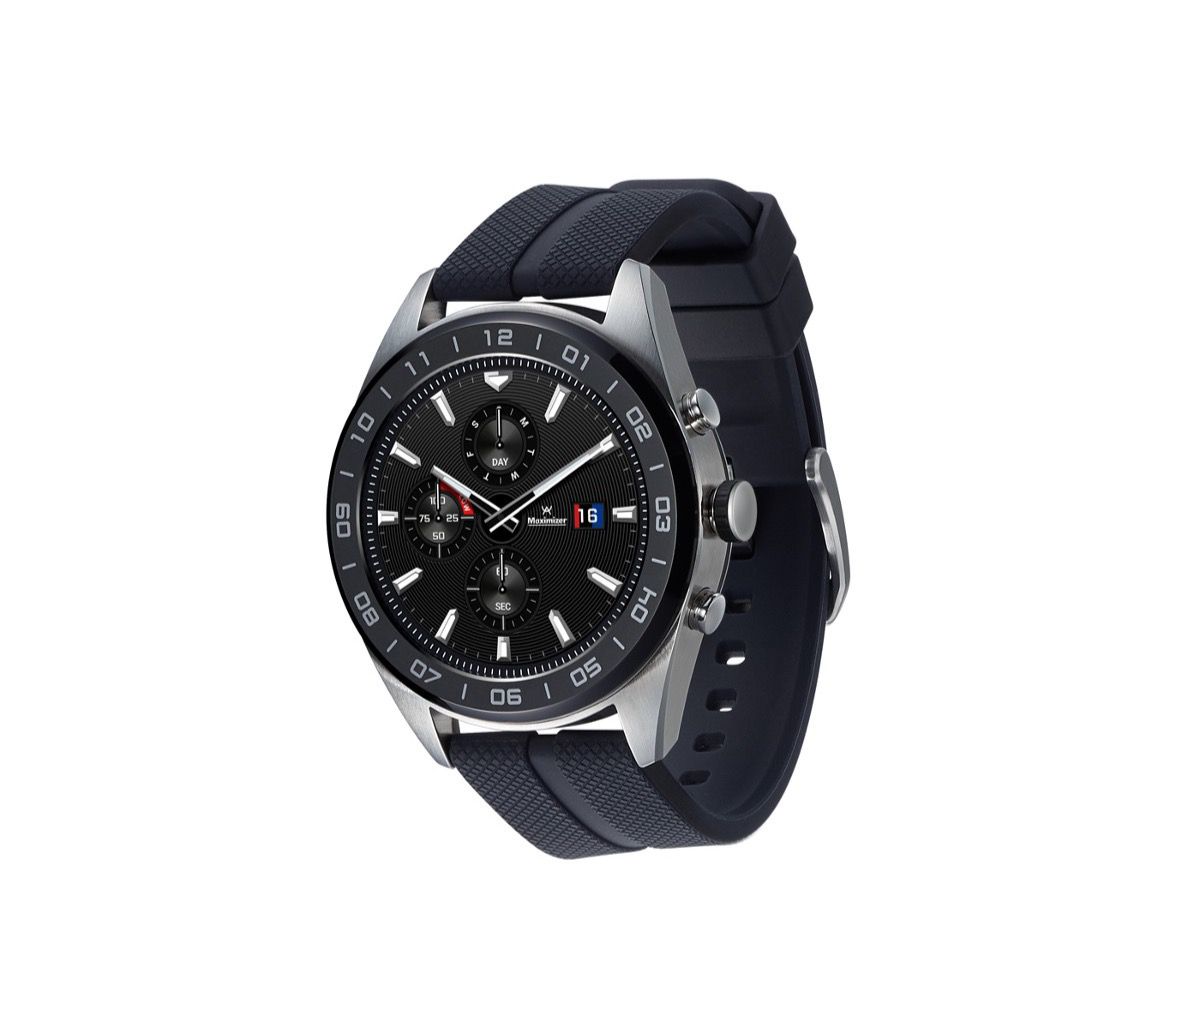 LG Watch W7, así es el primer smartwatch híbrido de LG
 